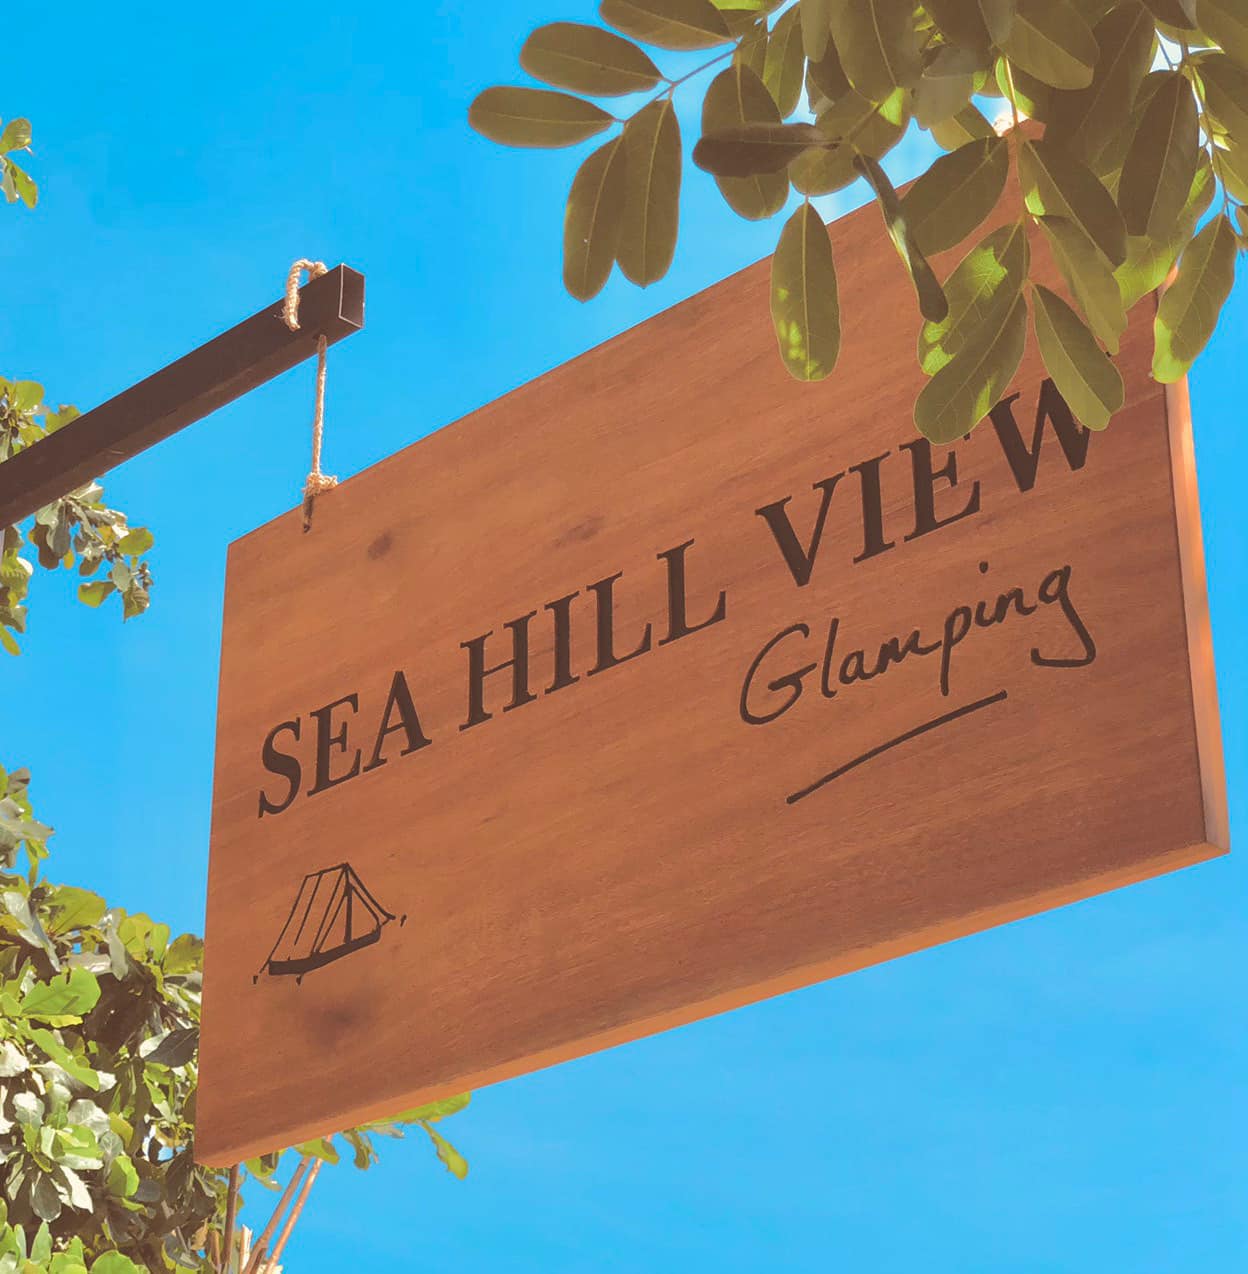 Sea Hill View Glamping-Bình Định